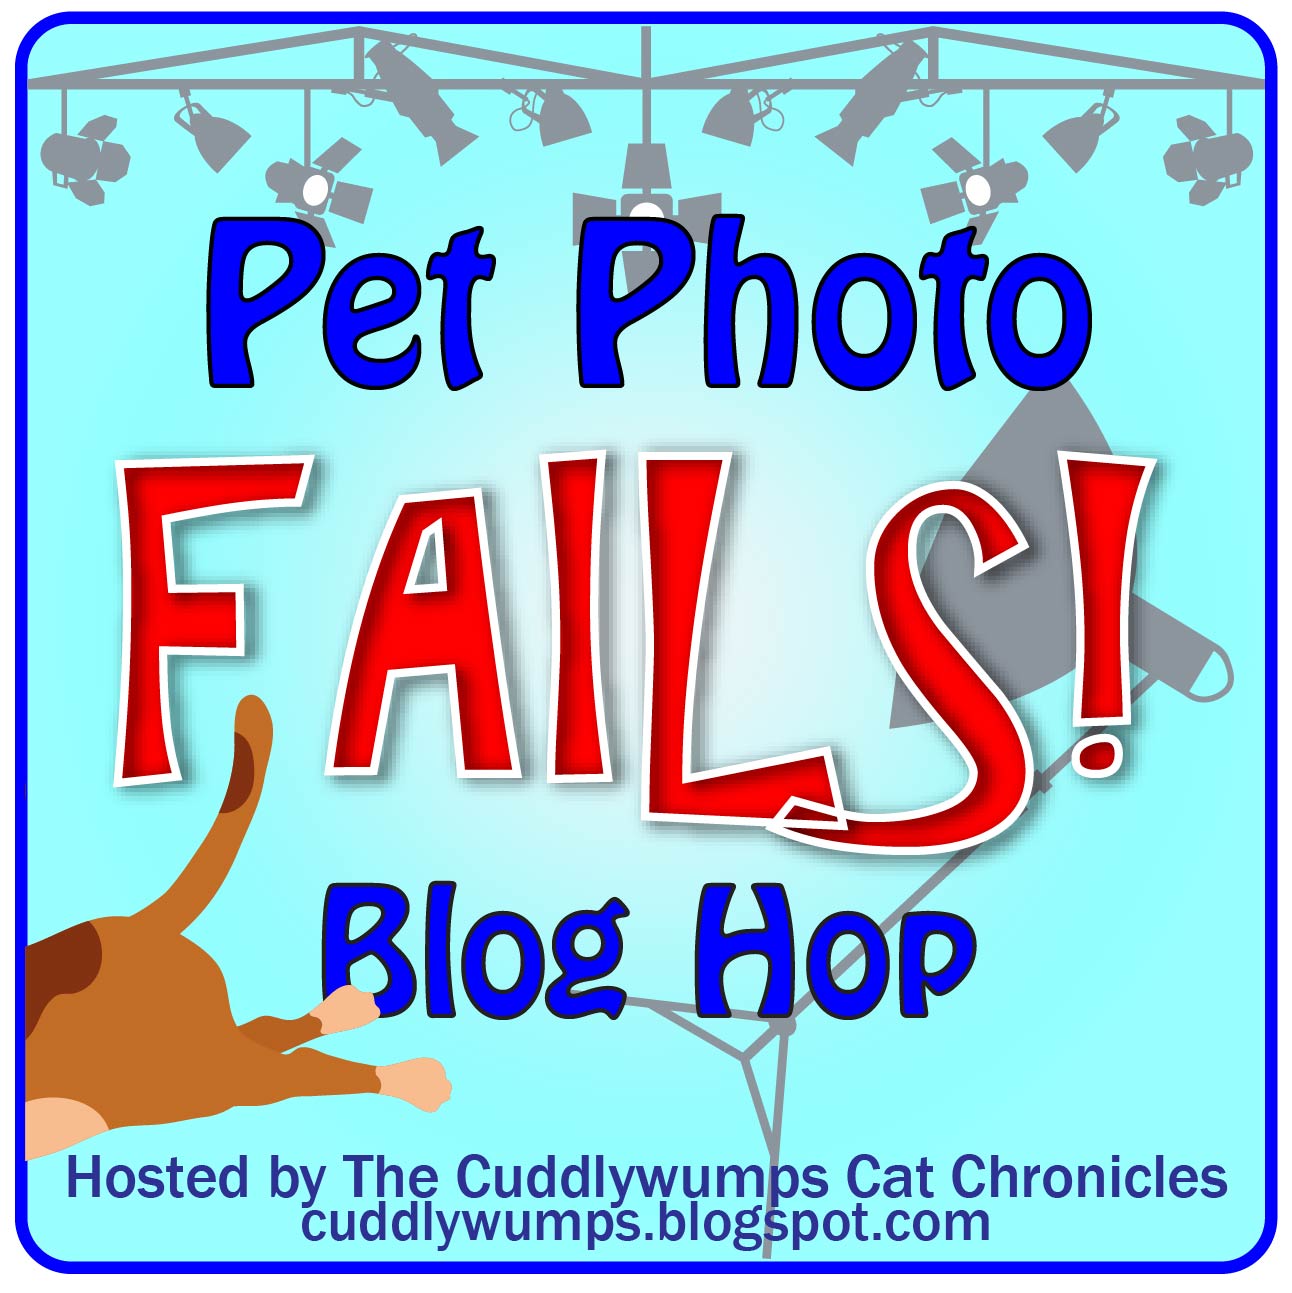 Pet Photo Fails Blog Hop